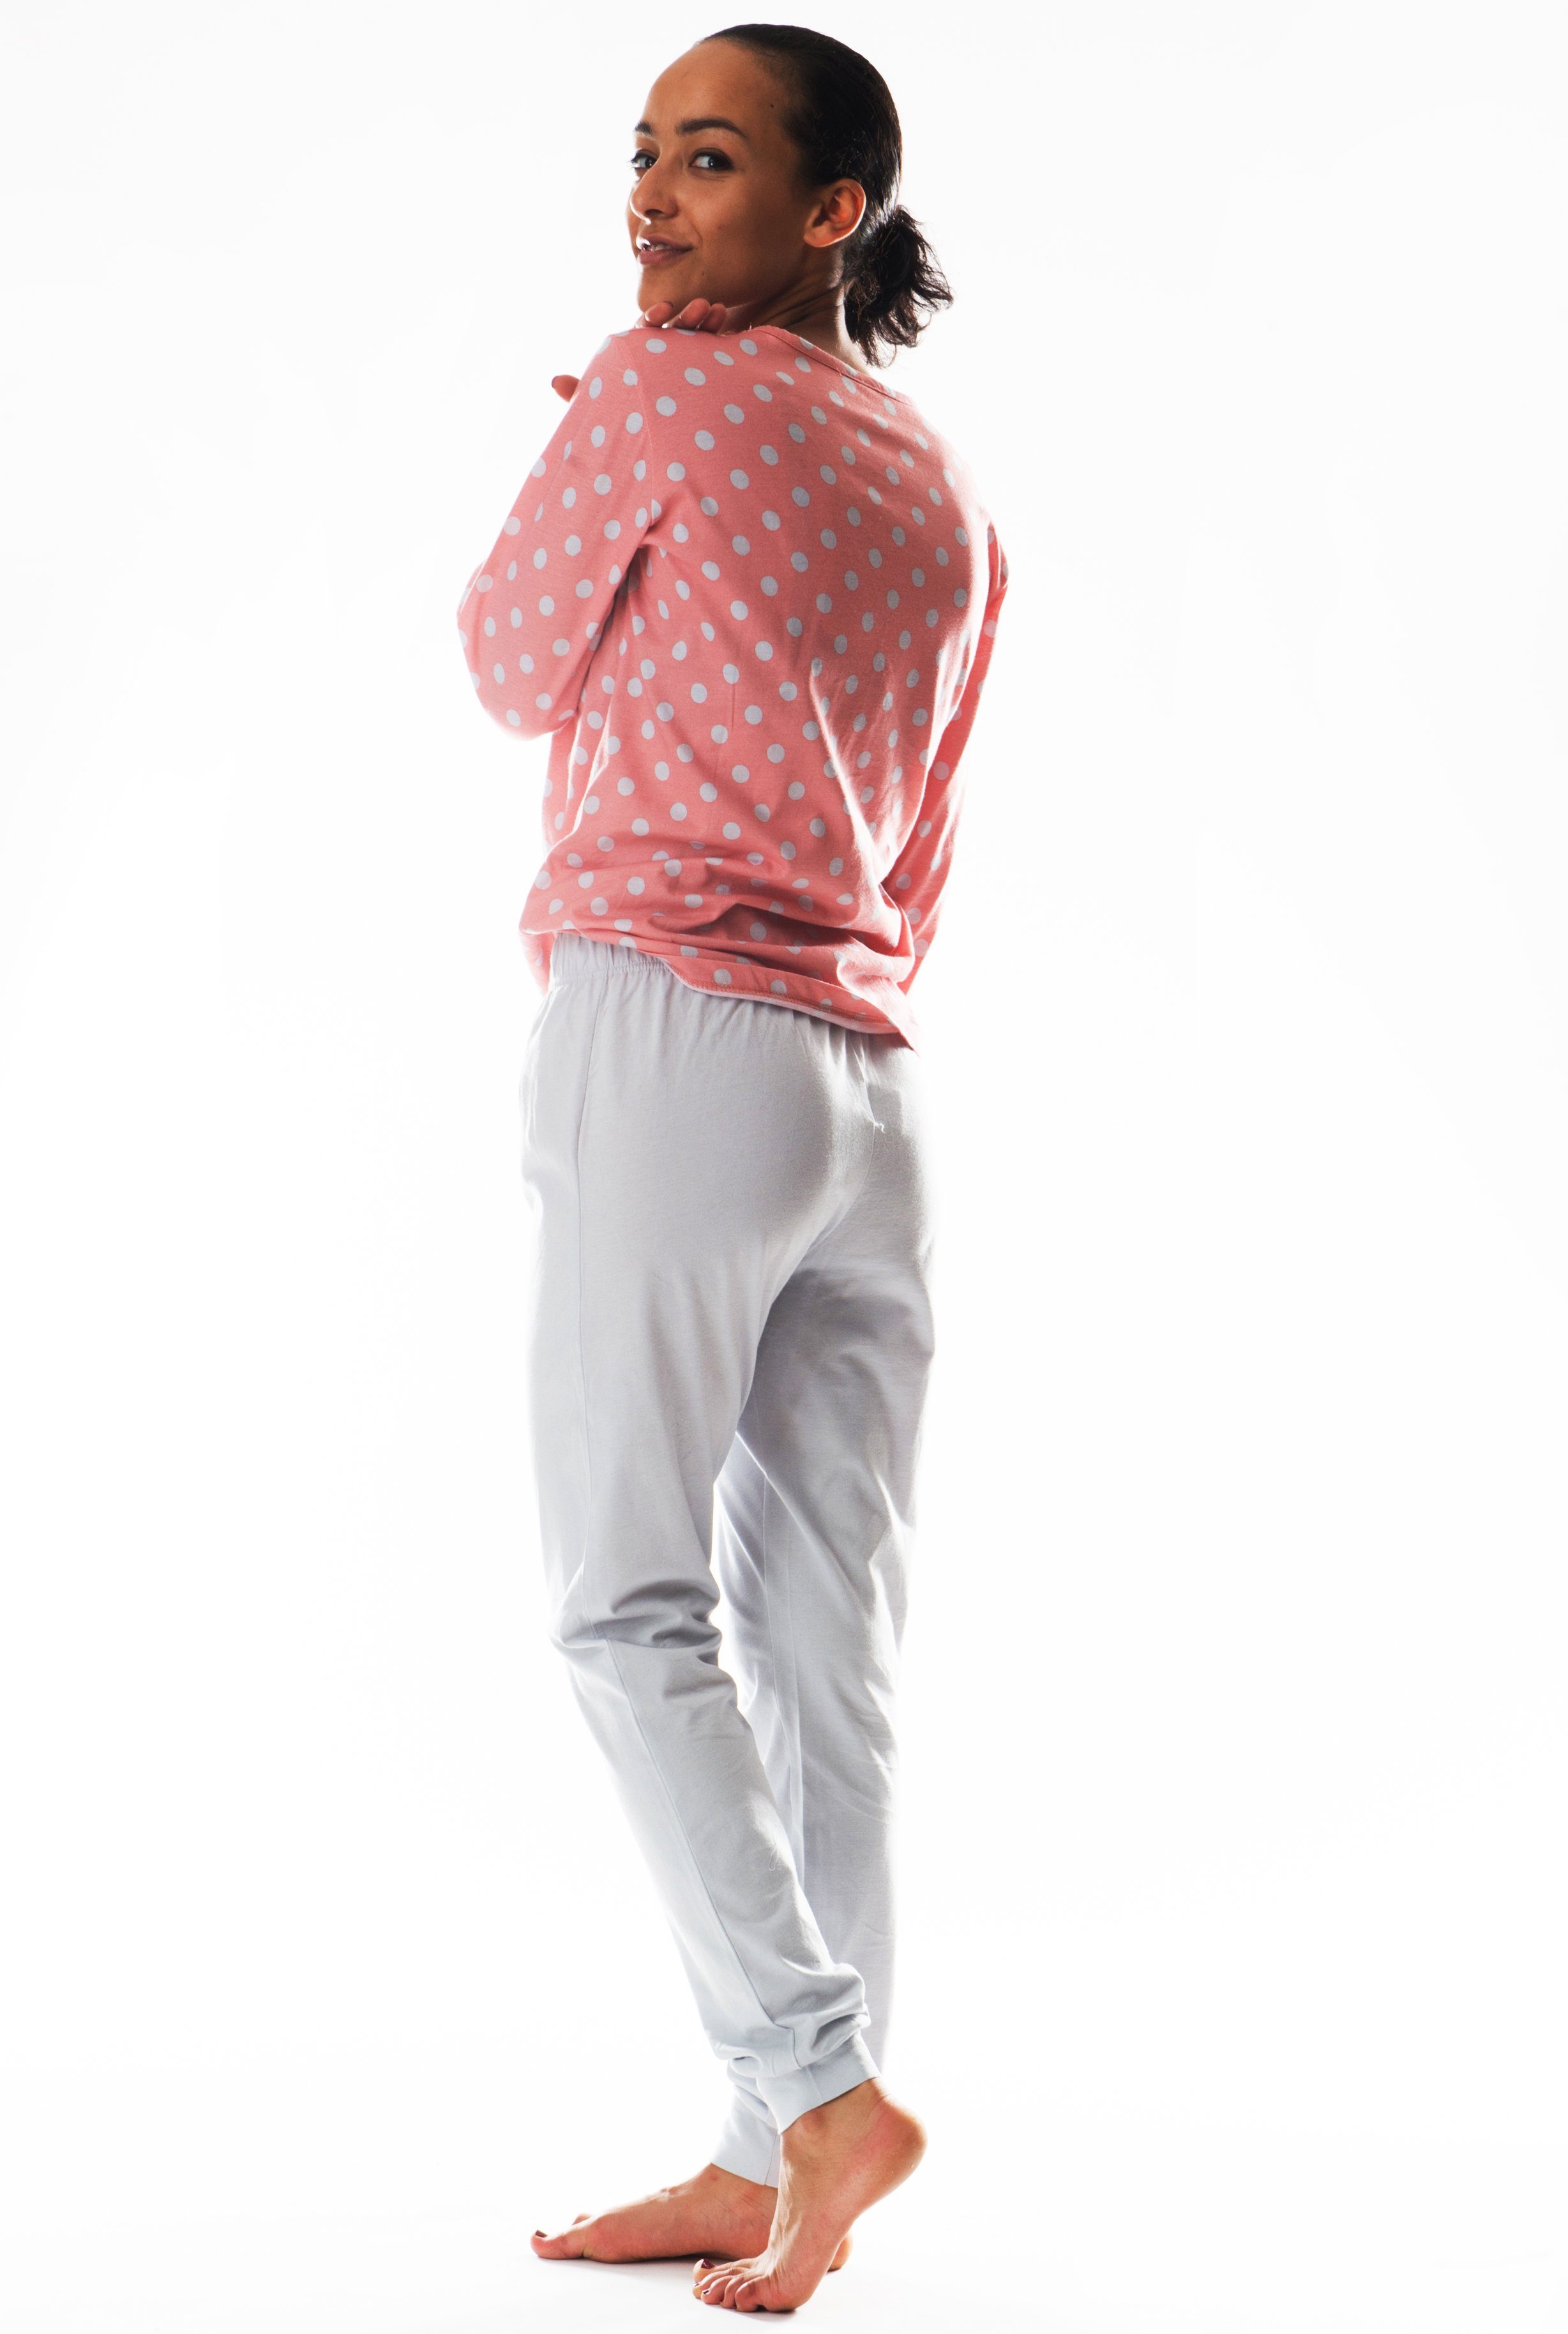 aus Pyjama reiner Consult-Tex Pyjama (Packung) rosa/grau DW990G Baumwolle Schlafanzug Damen